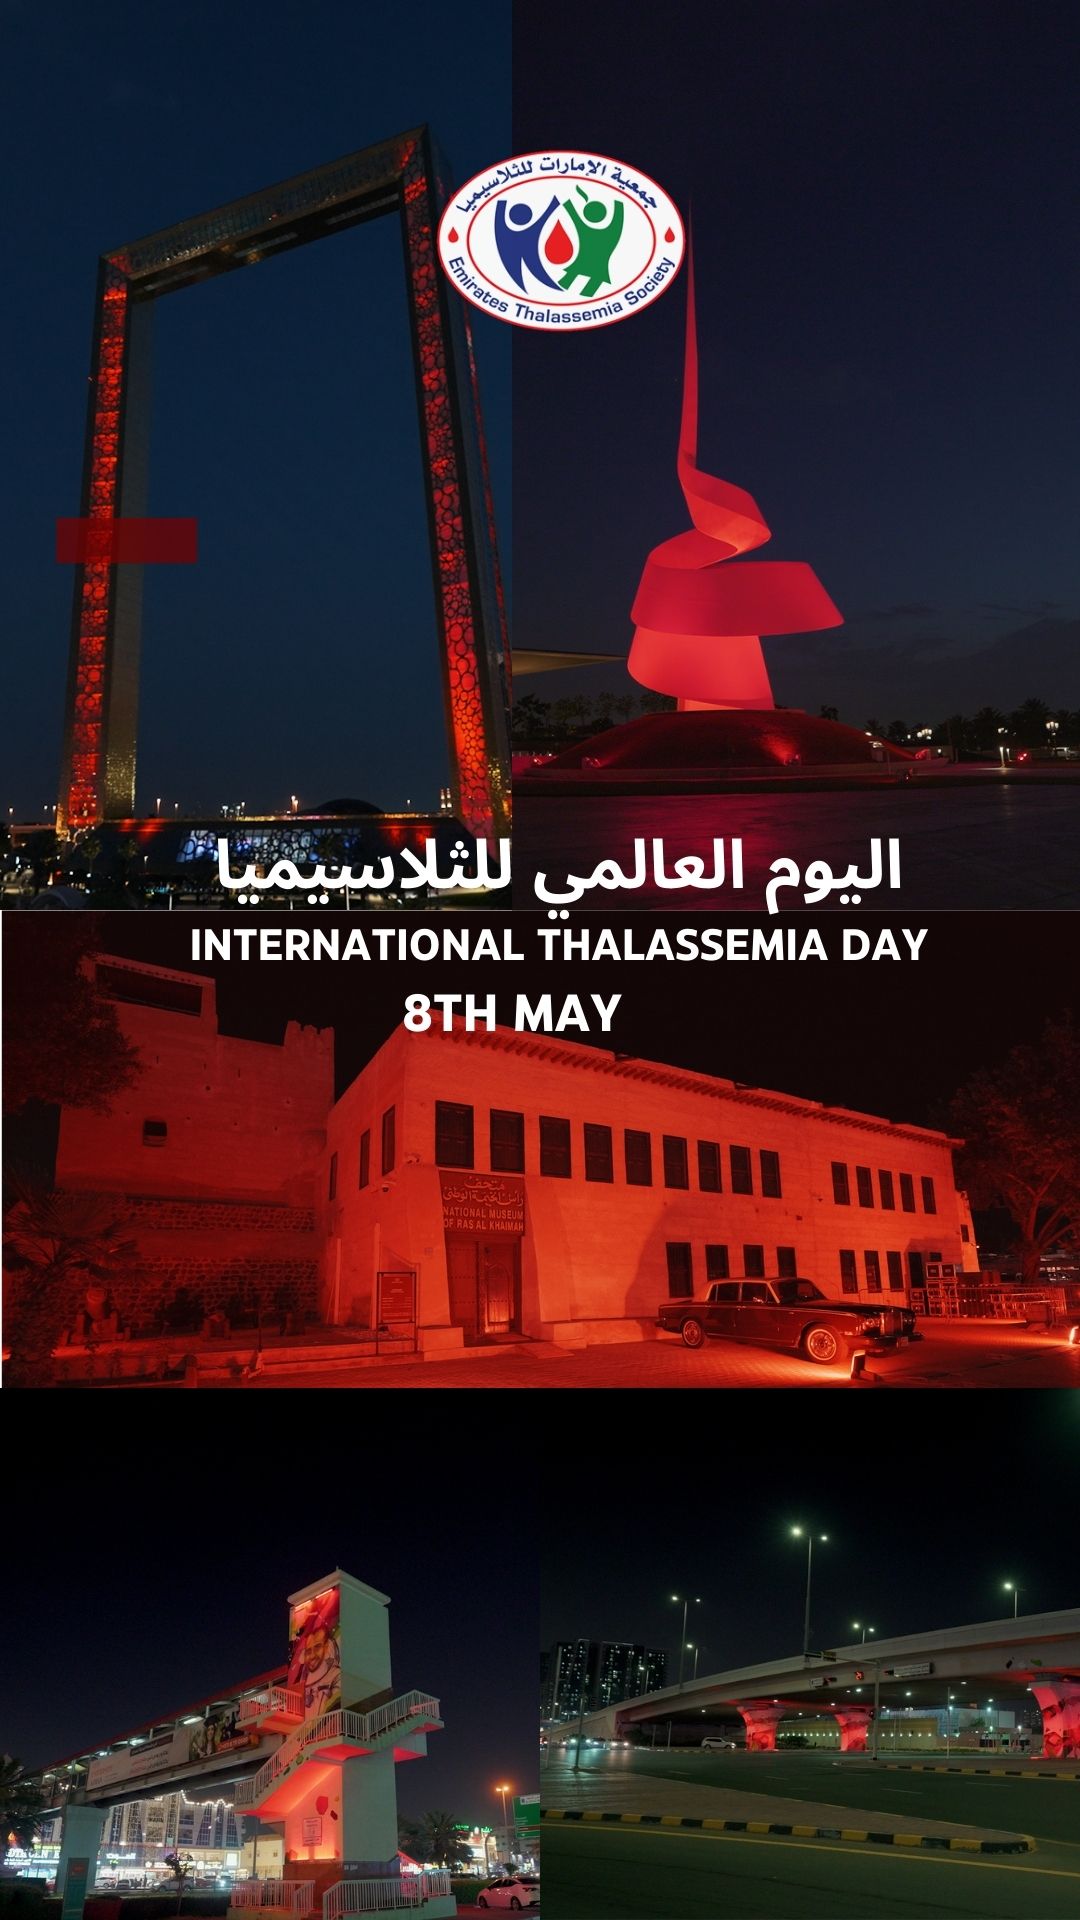 إضاءة بعض الأماكن في دولة الإمارات العربية المتحدة باللون الأحمر بمناسبة اليوم العالمي للثلاسيميا